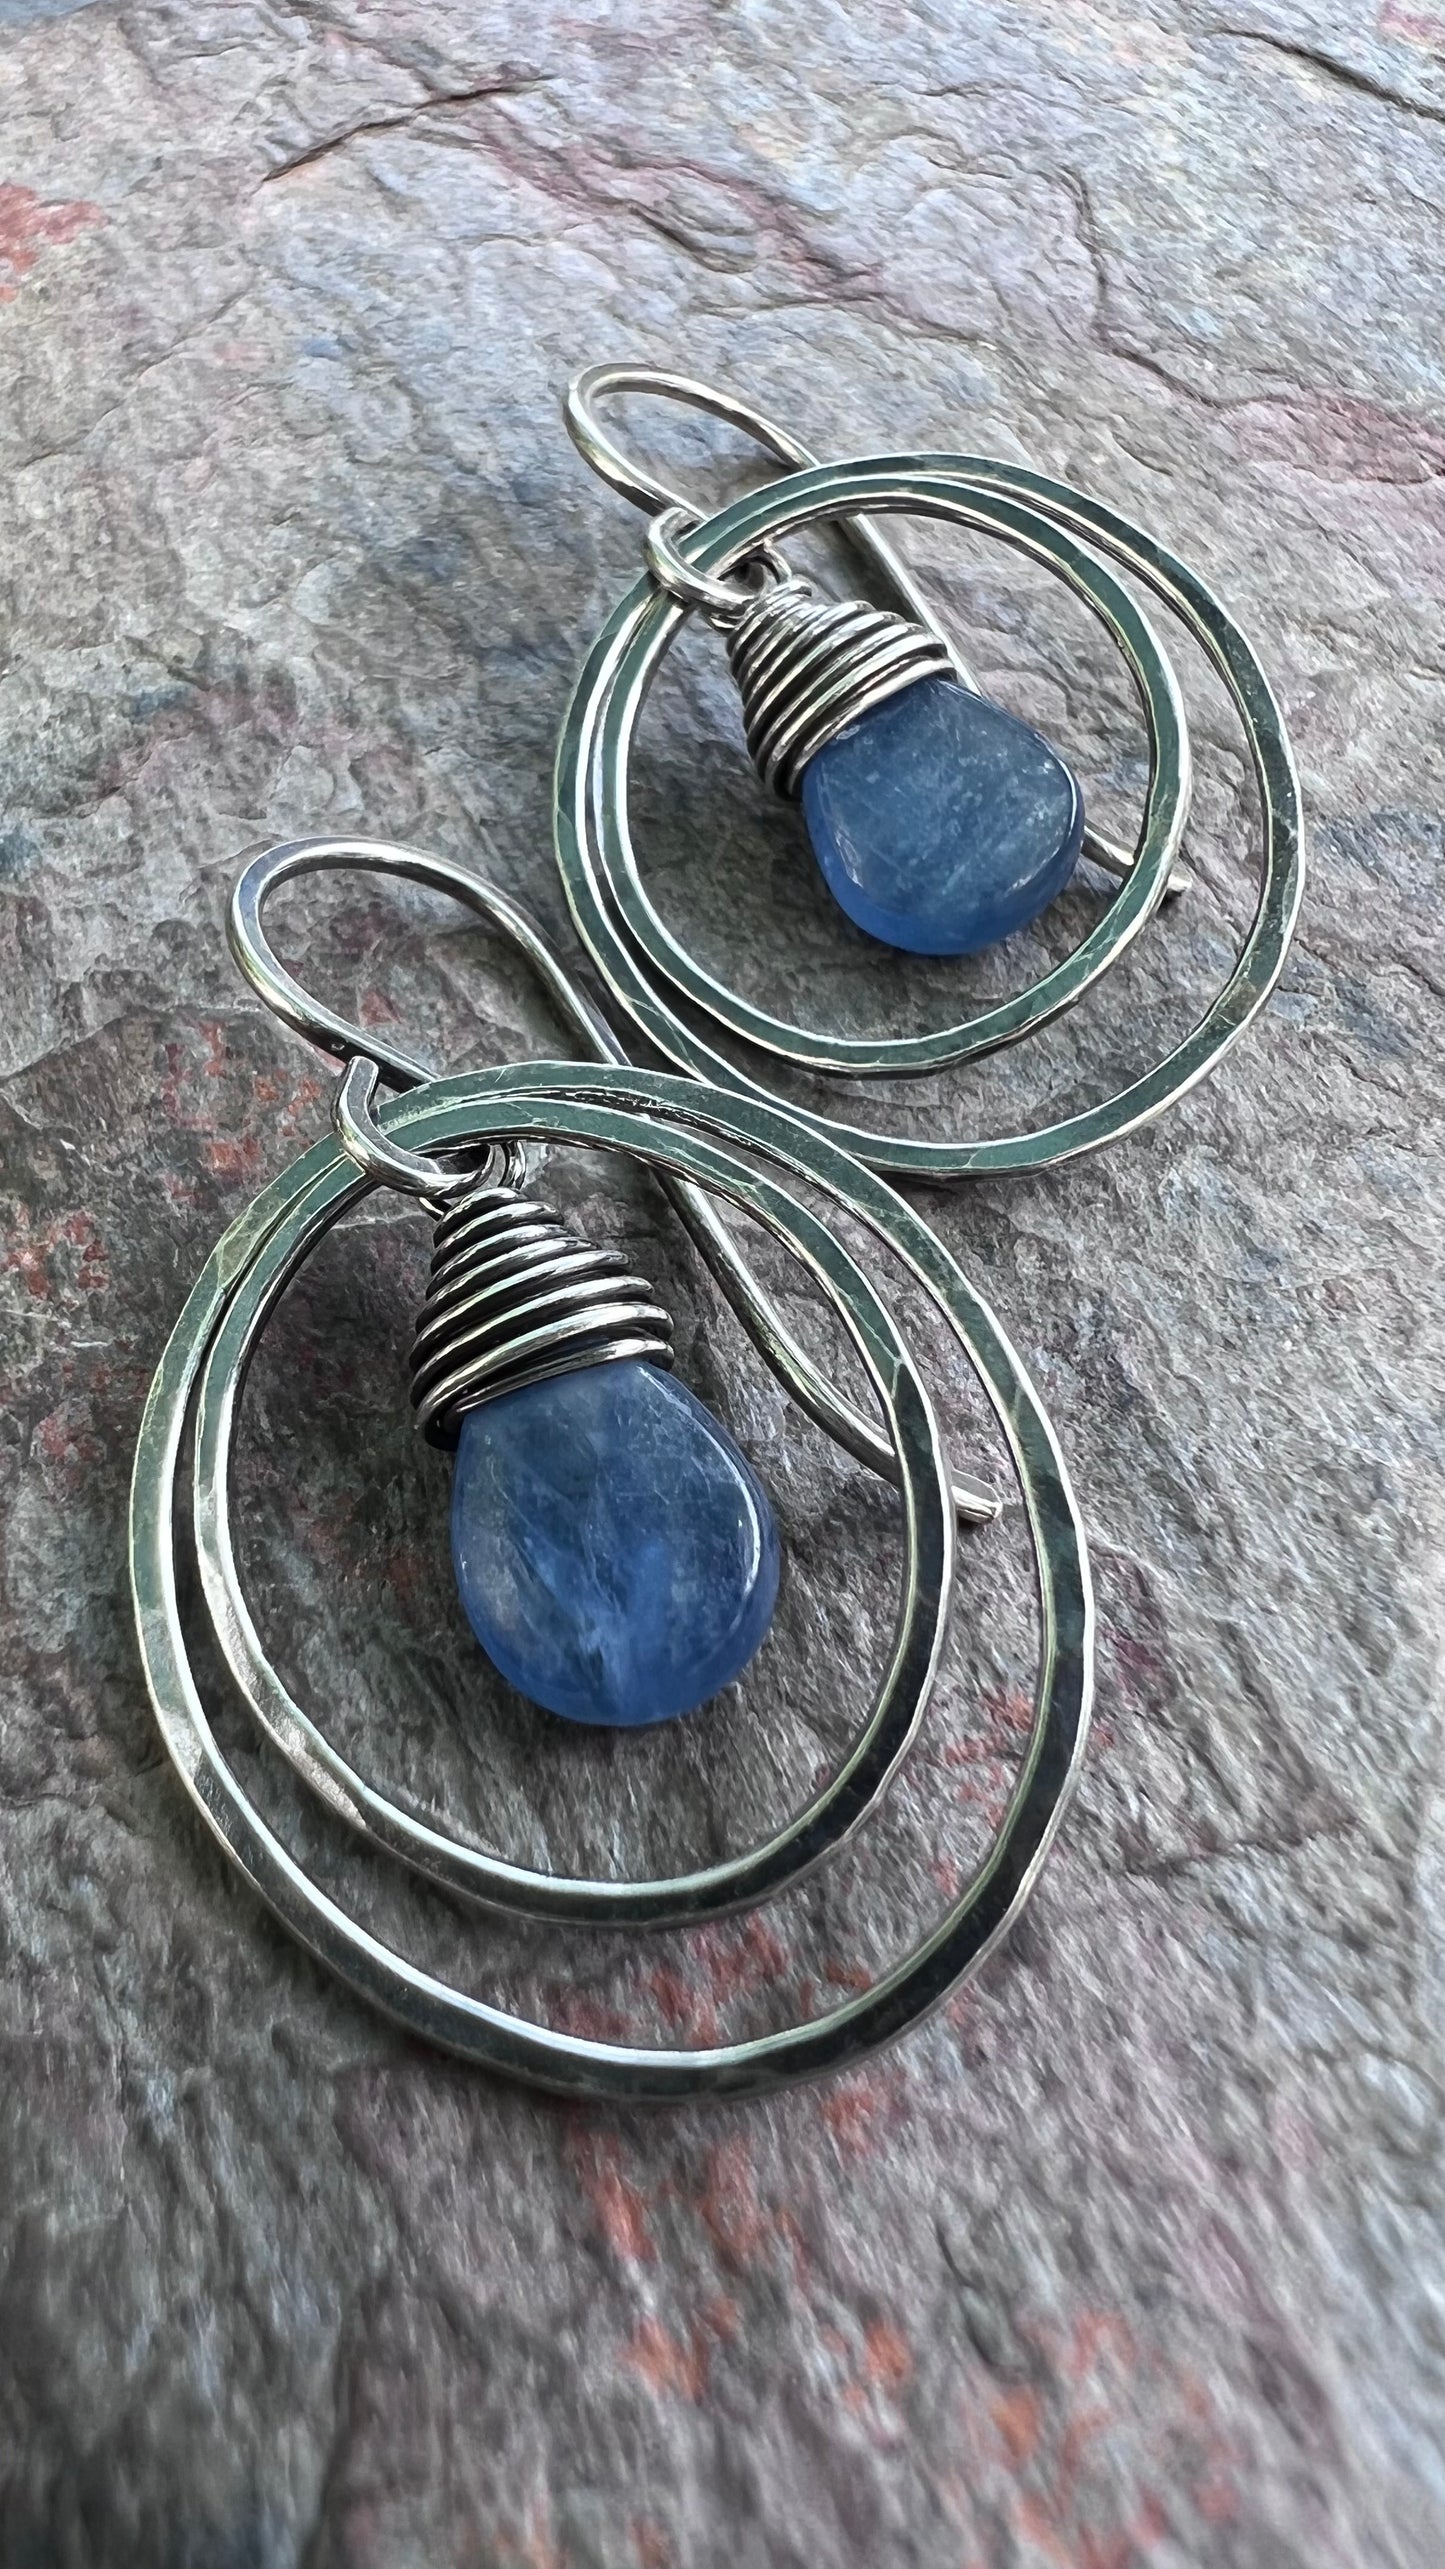 Kyanite Sterling Silver Earrings - Kyanite Teardrops in Hammed Sterling Silver Oval Earrings